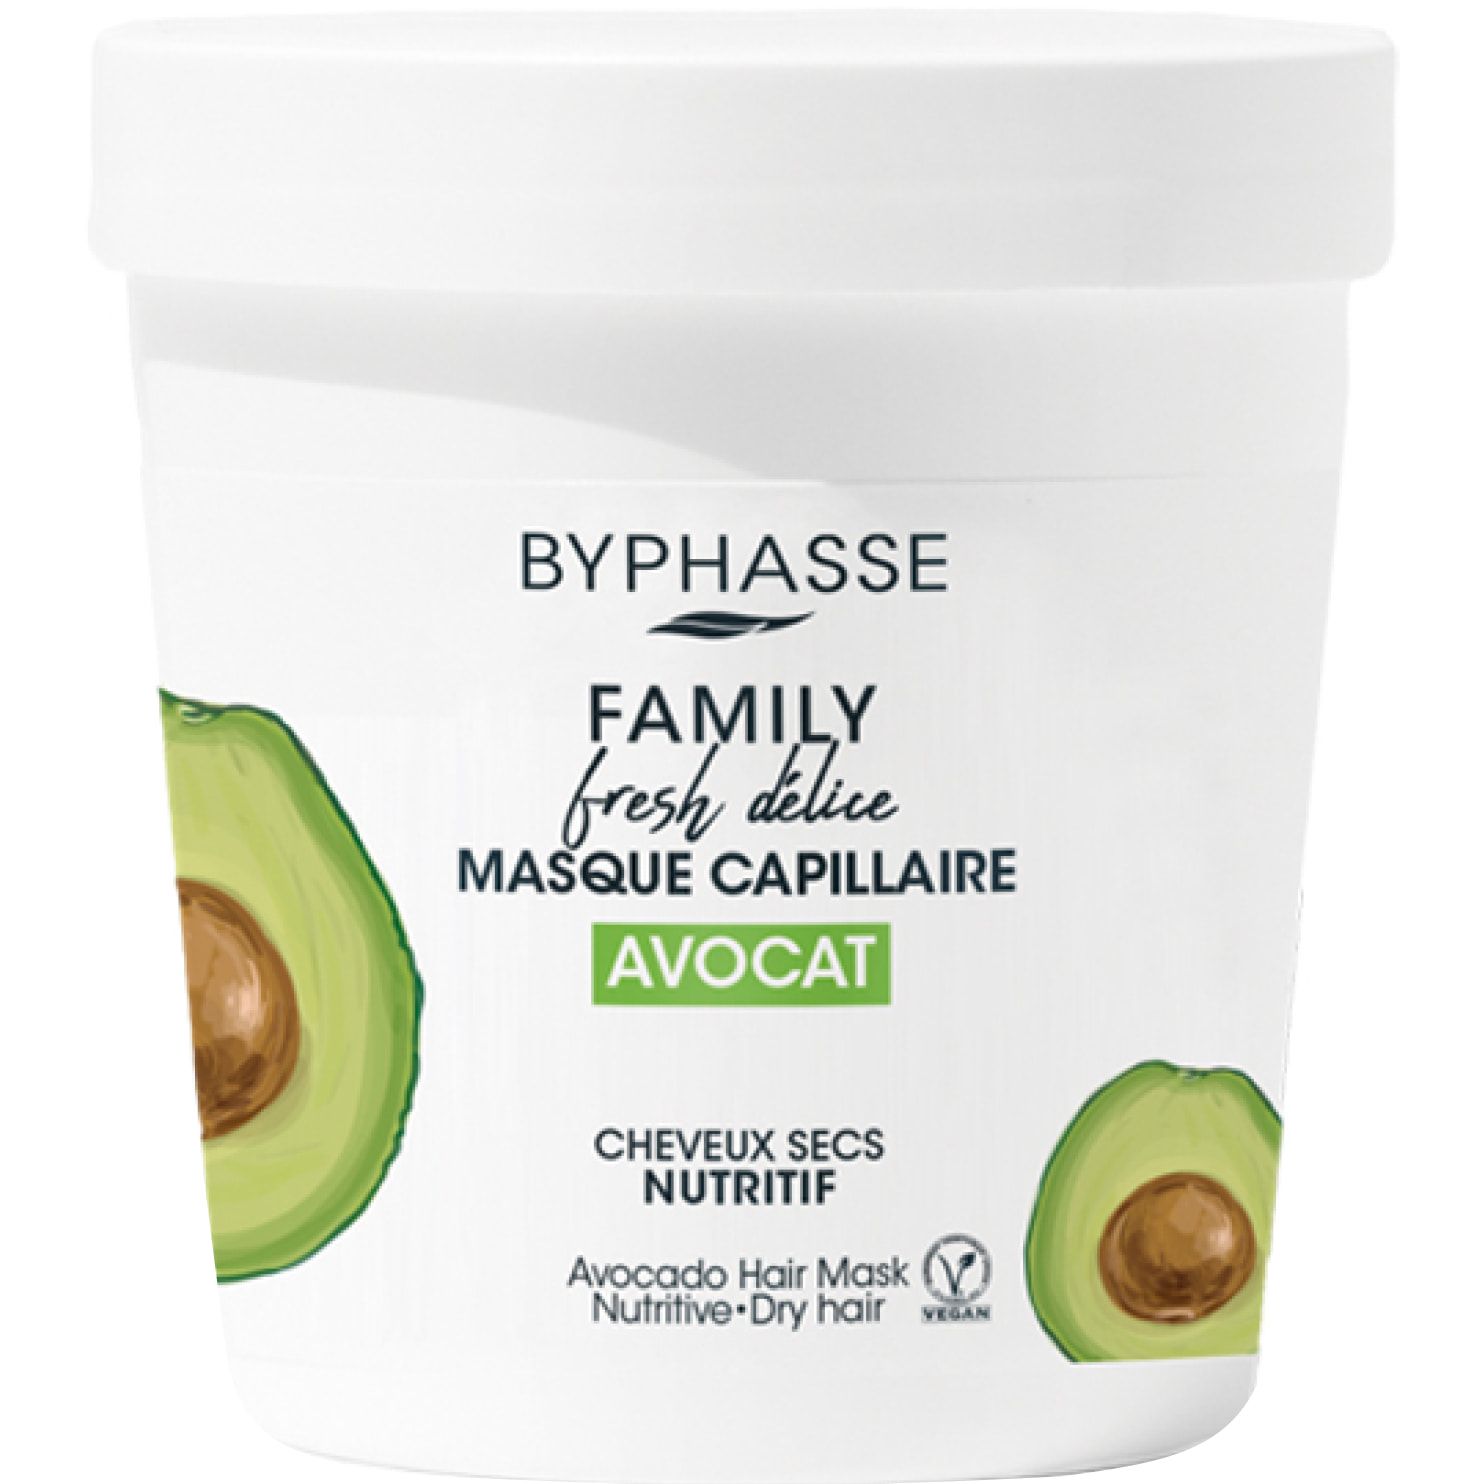 Маска для сухих волос Byphasse Family Fresh Delice, с авокадо, 250 мл (775203) - фото 1